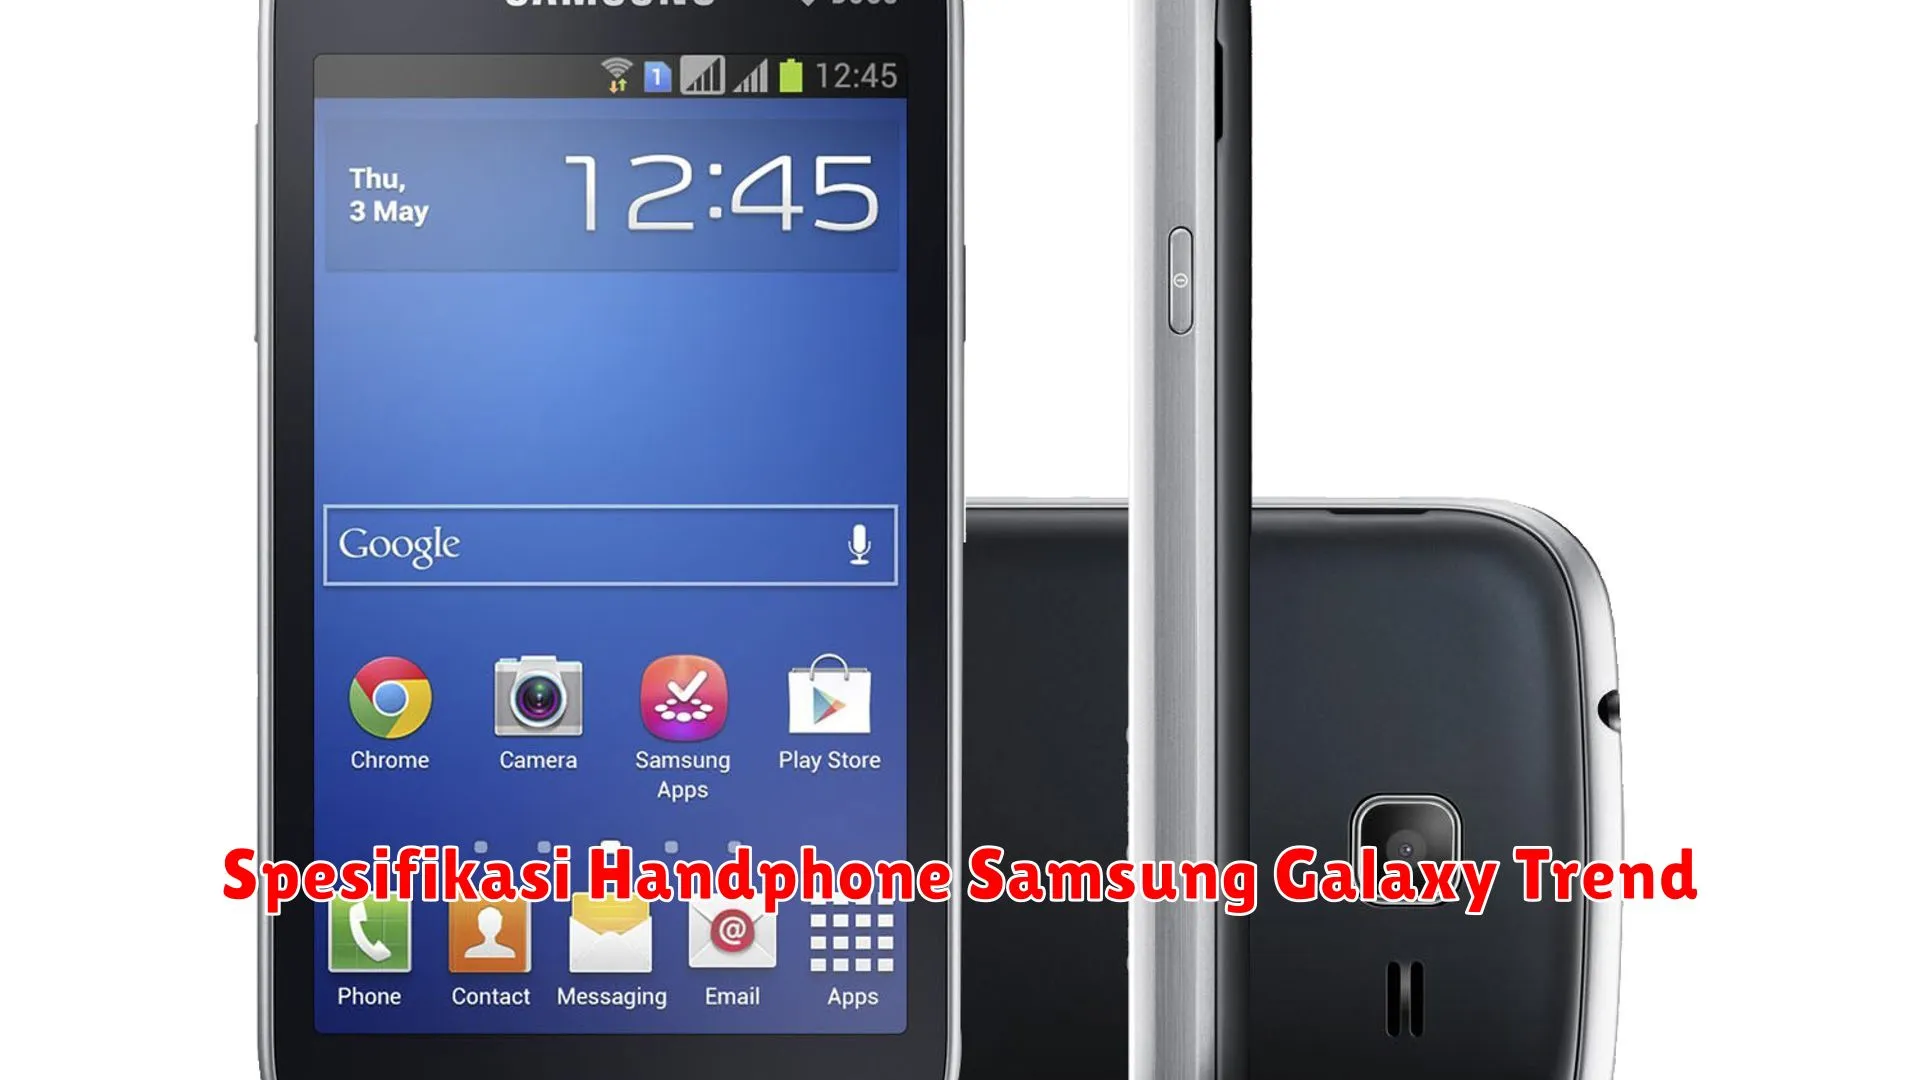 Spesifikasi Handphone Samsung Galaxy Trend